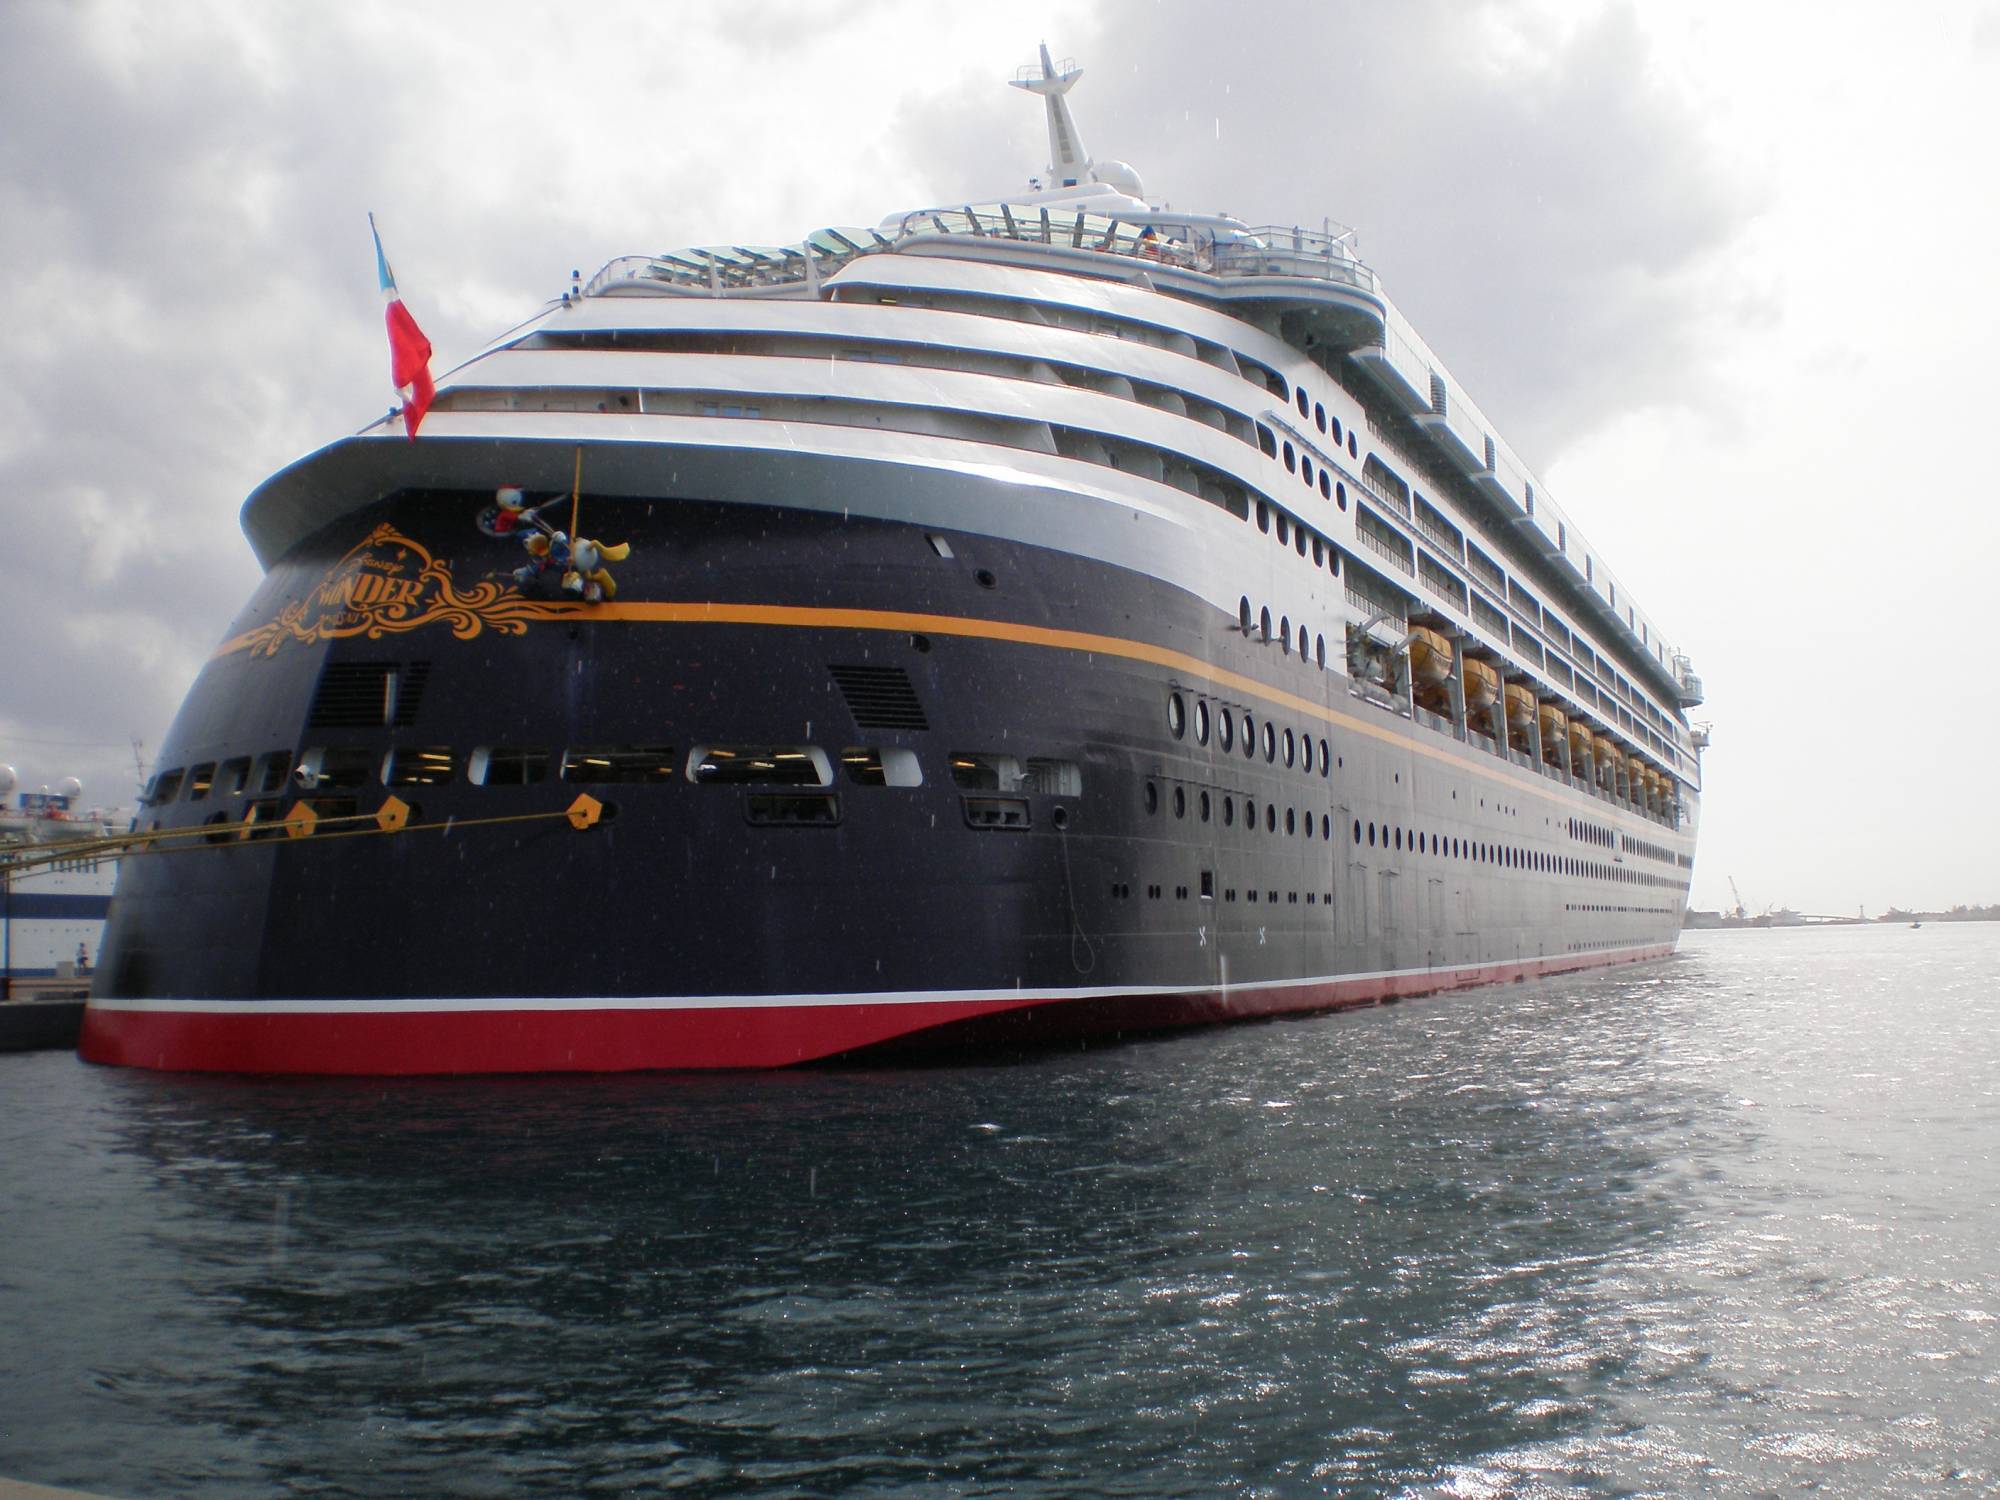 Disney Wonder docked in Nassau